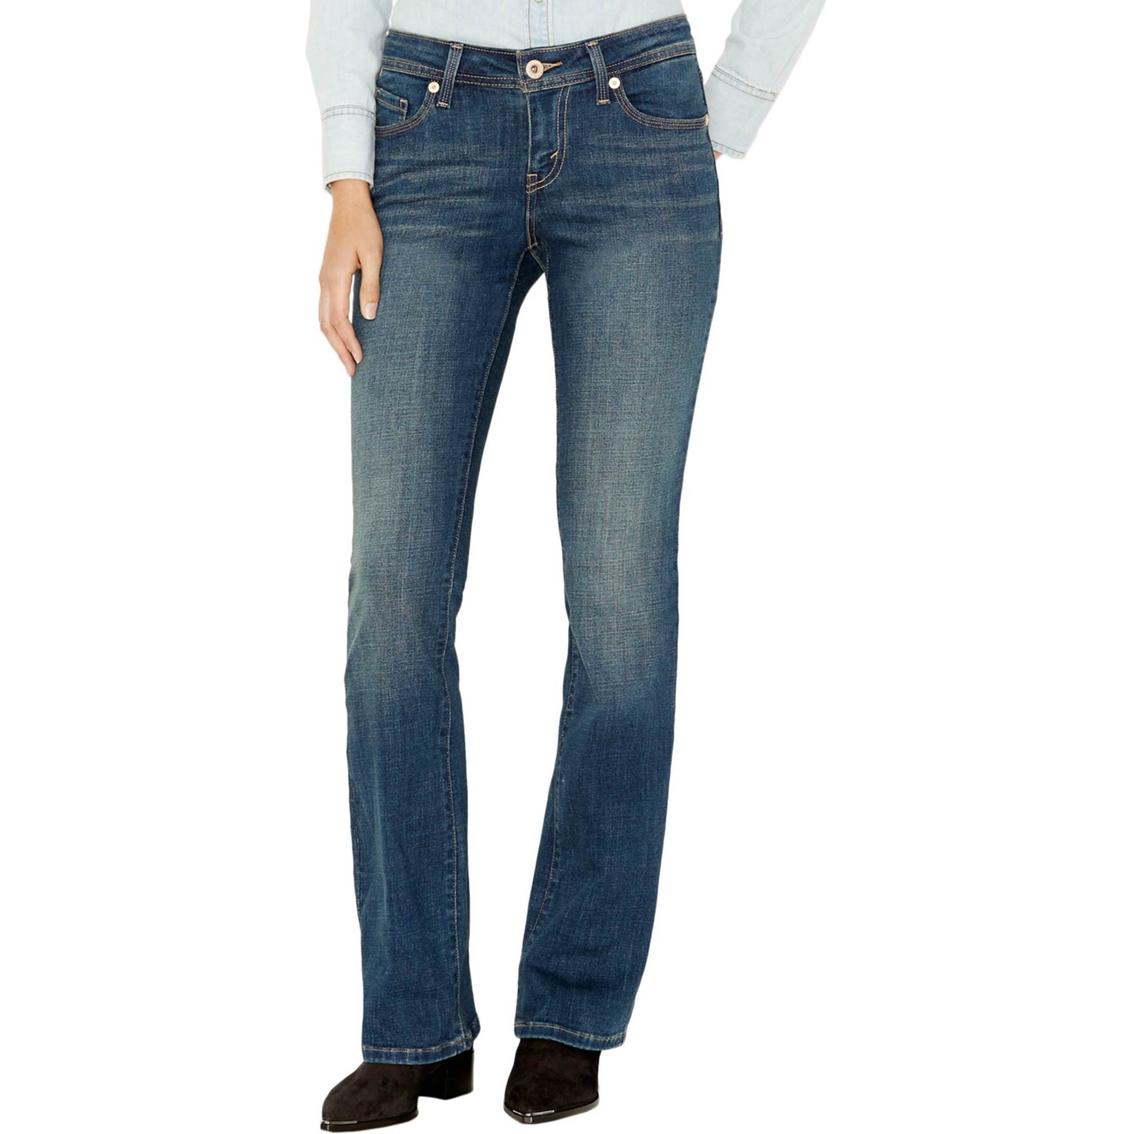 levis jeans 529